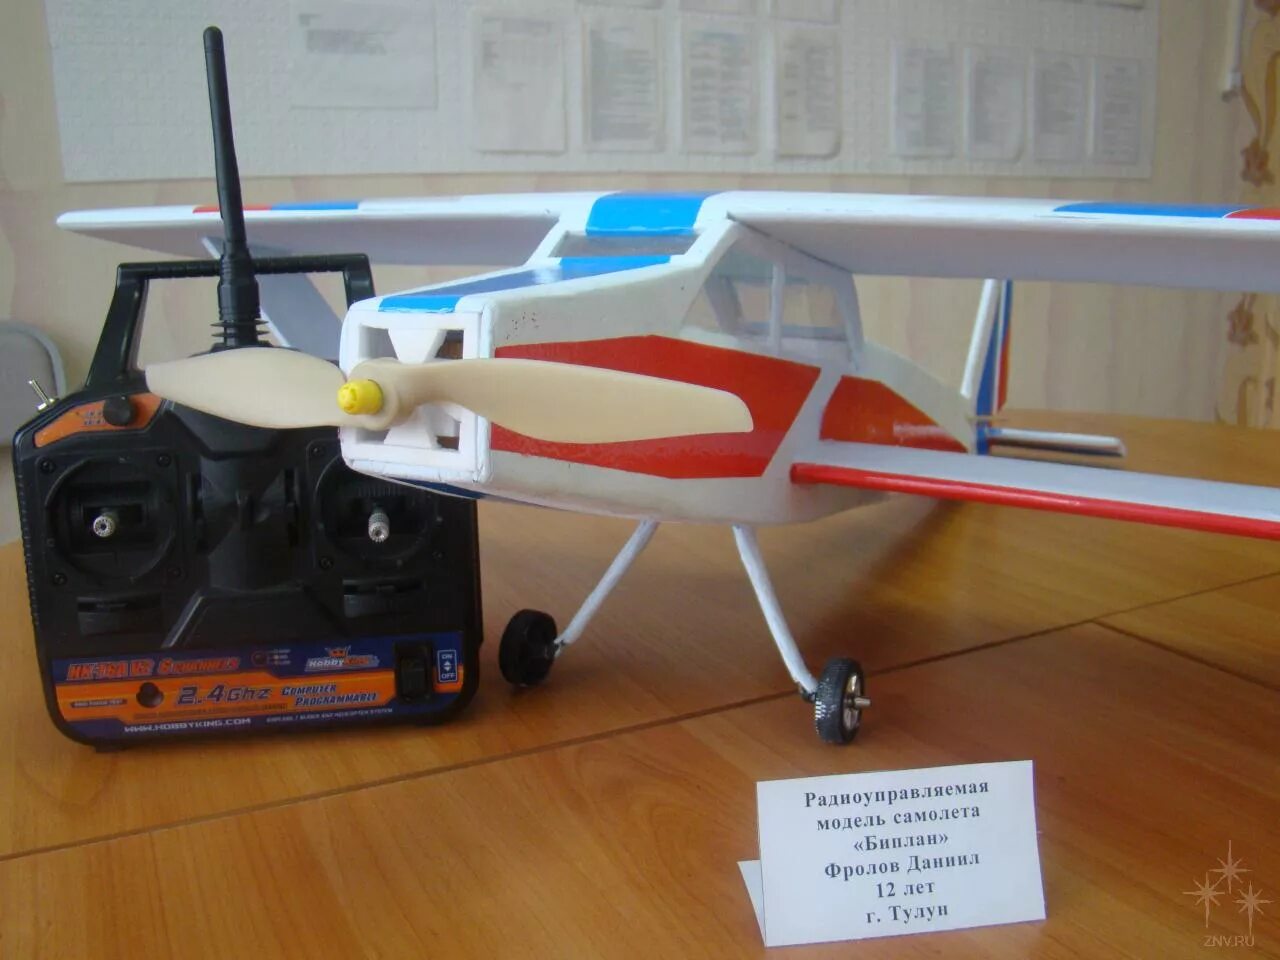 Модели самолетов на радиоуправлении. Радиоуправляемые самолеты бипланы. Самолет биплан на радиоуправлении. Бе-2500 самолёт модель на радиоуправлении. Радиоуправляемый биплан Bulldog.